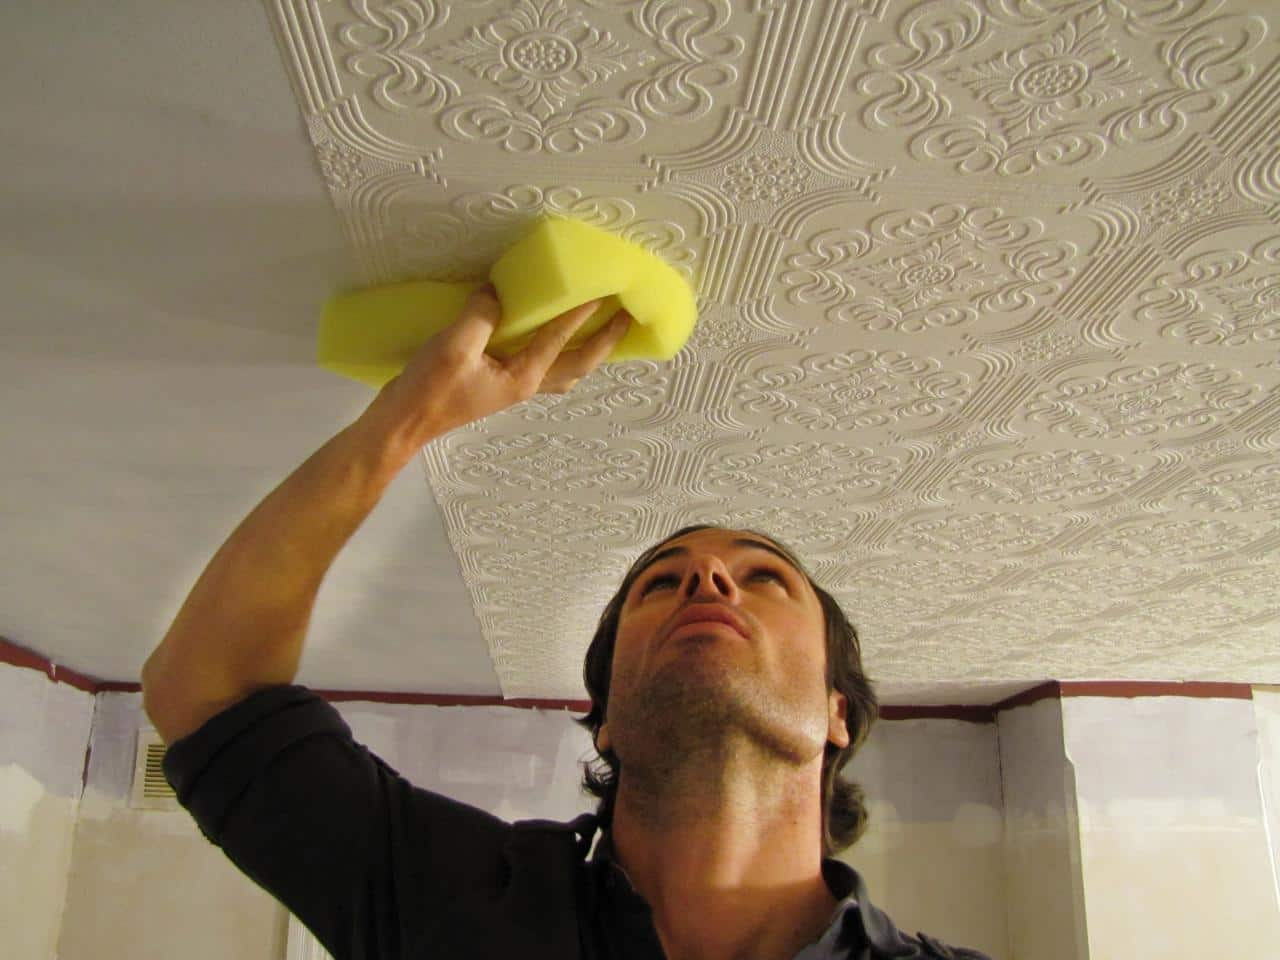 Embossed Wallpaper Install In Ceiling - White Embossed Wallpaper On Ceiling - HD Wallpaper 